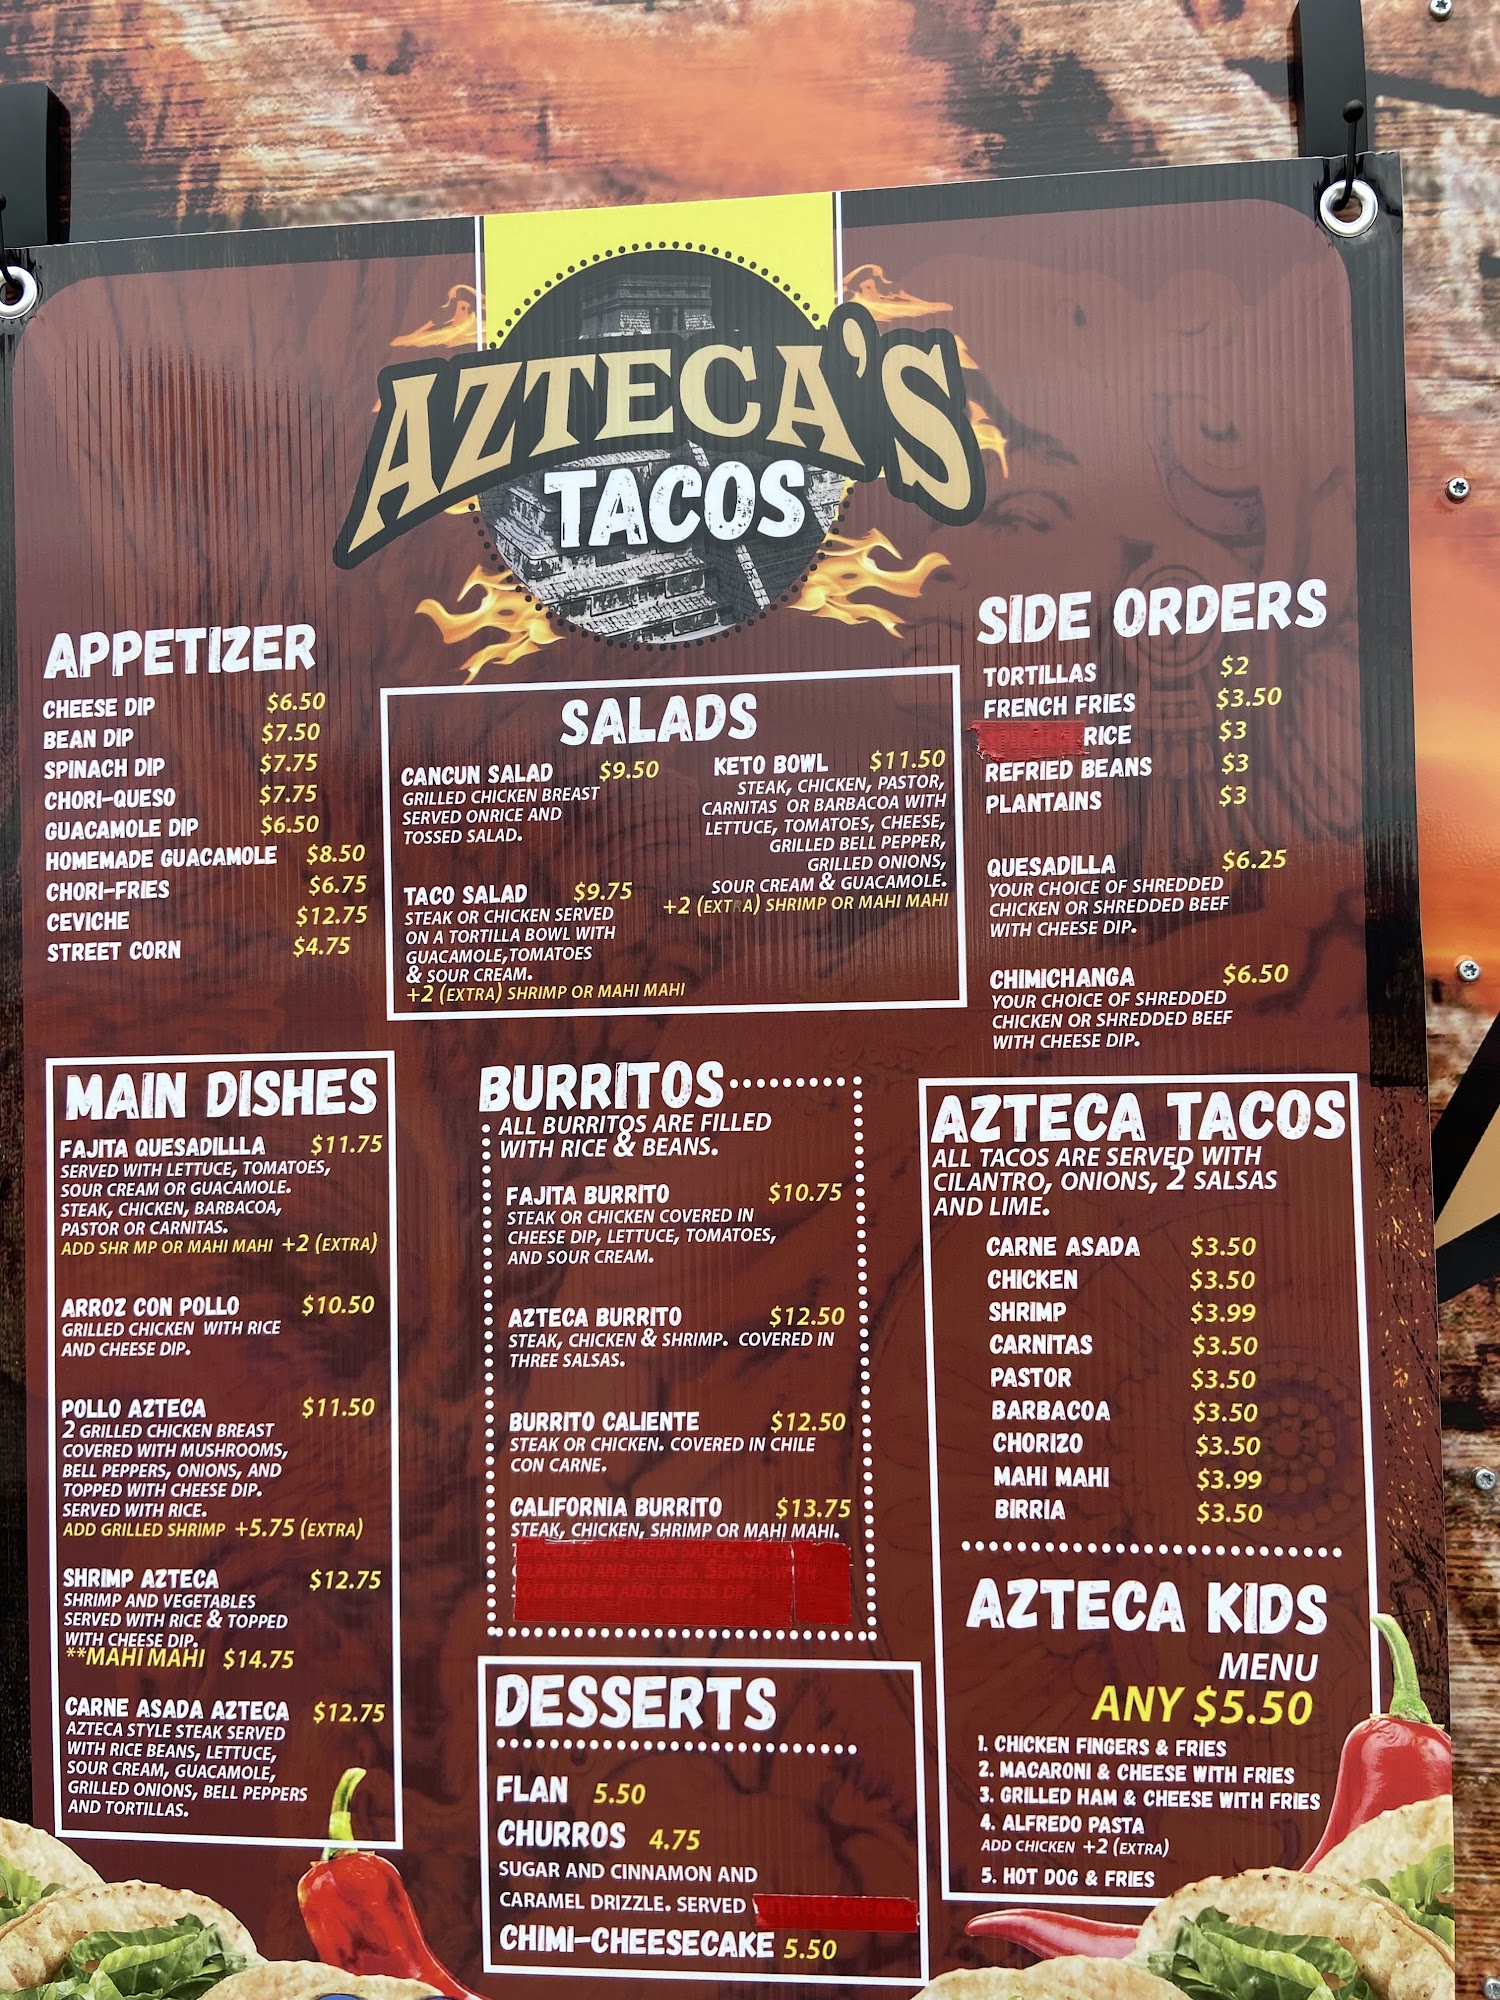 Azteca's Tacos